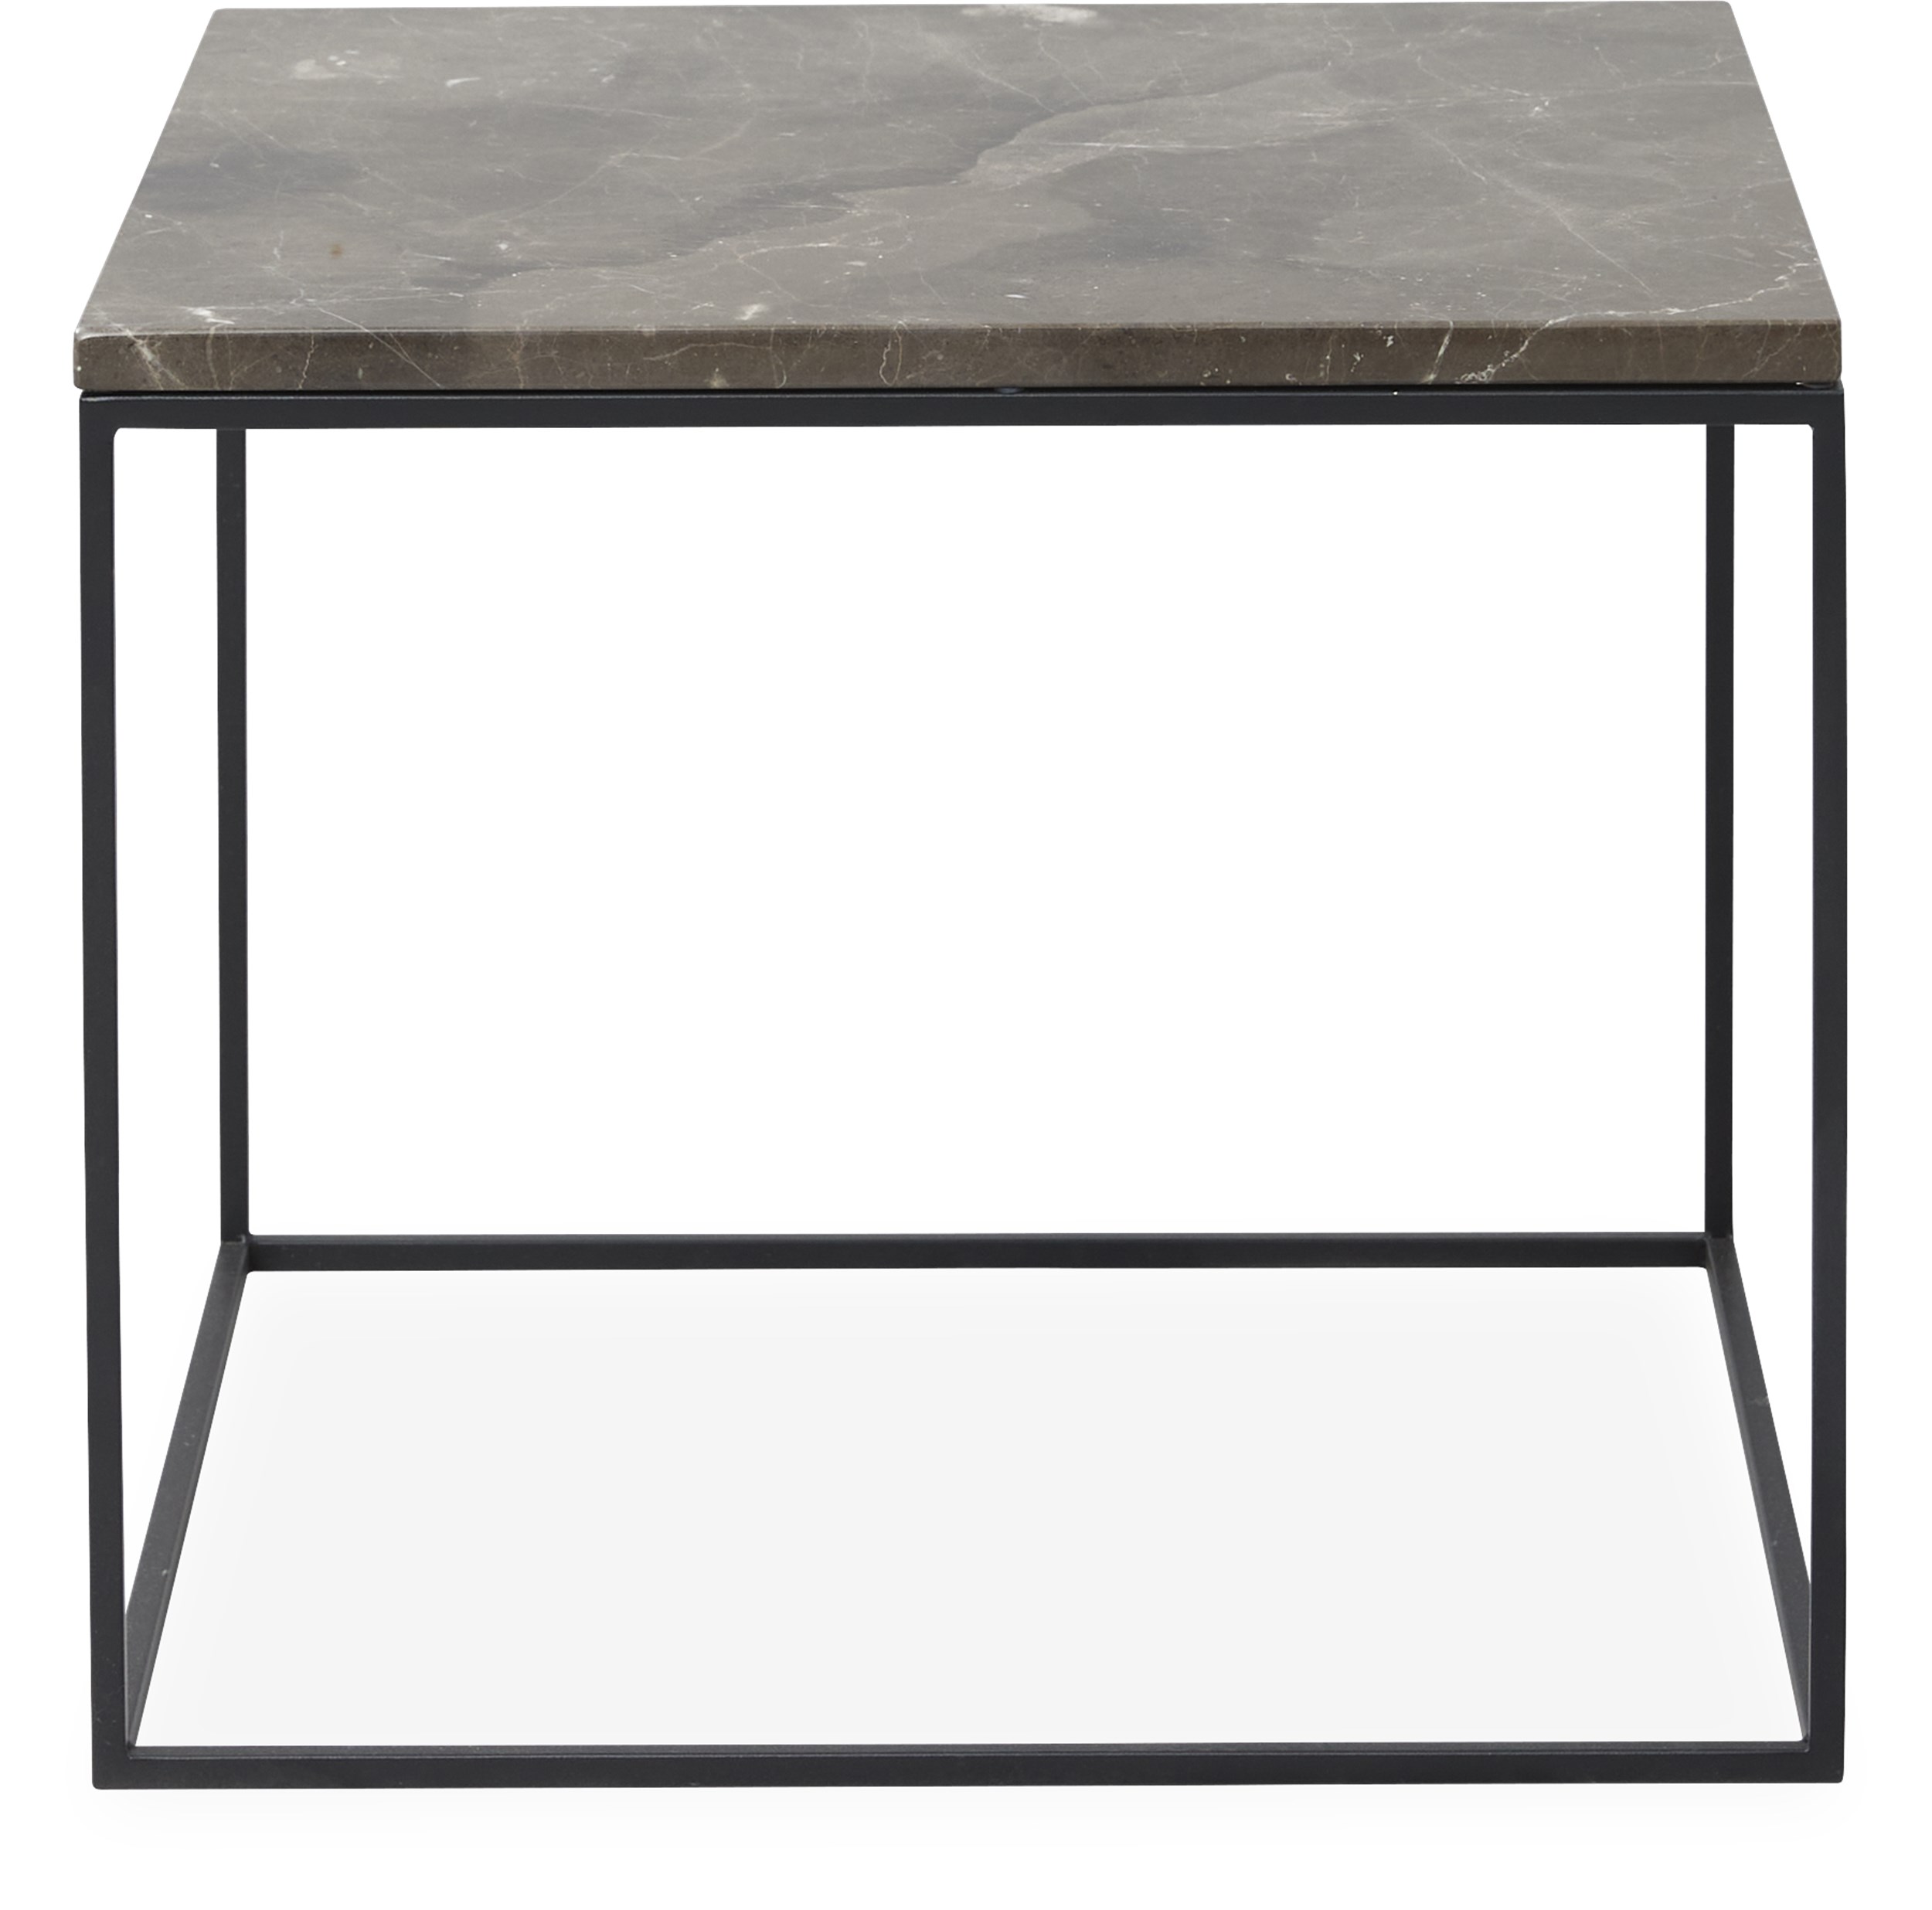 Square Soffbord 50 x 41,6 x 50 cm - Bordsskiva i brun emperador marmor och stomme i svartlackerad metall